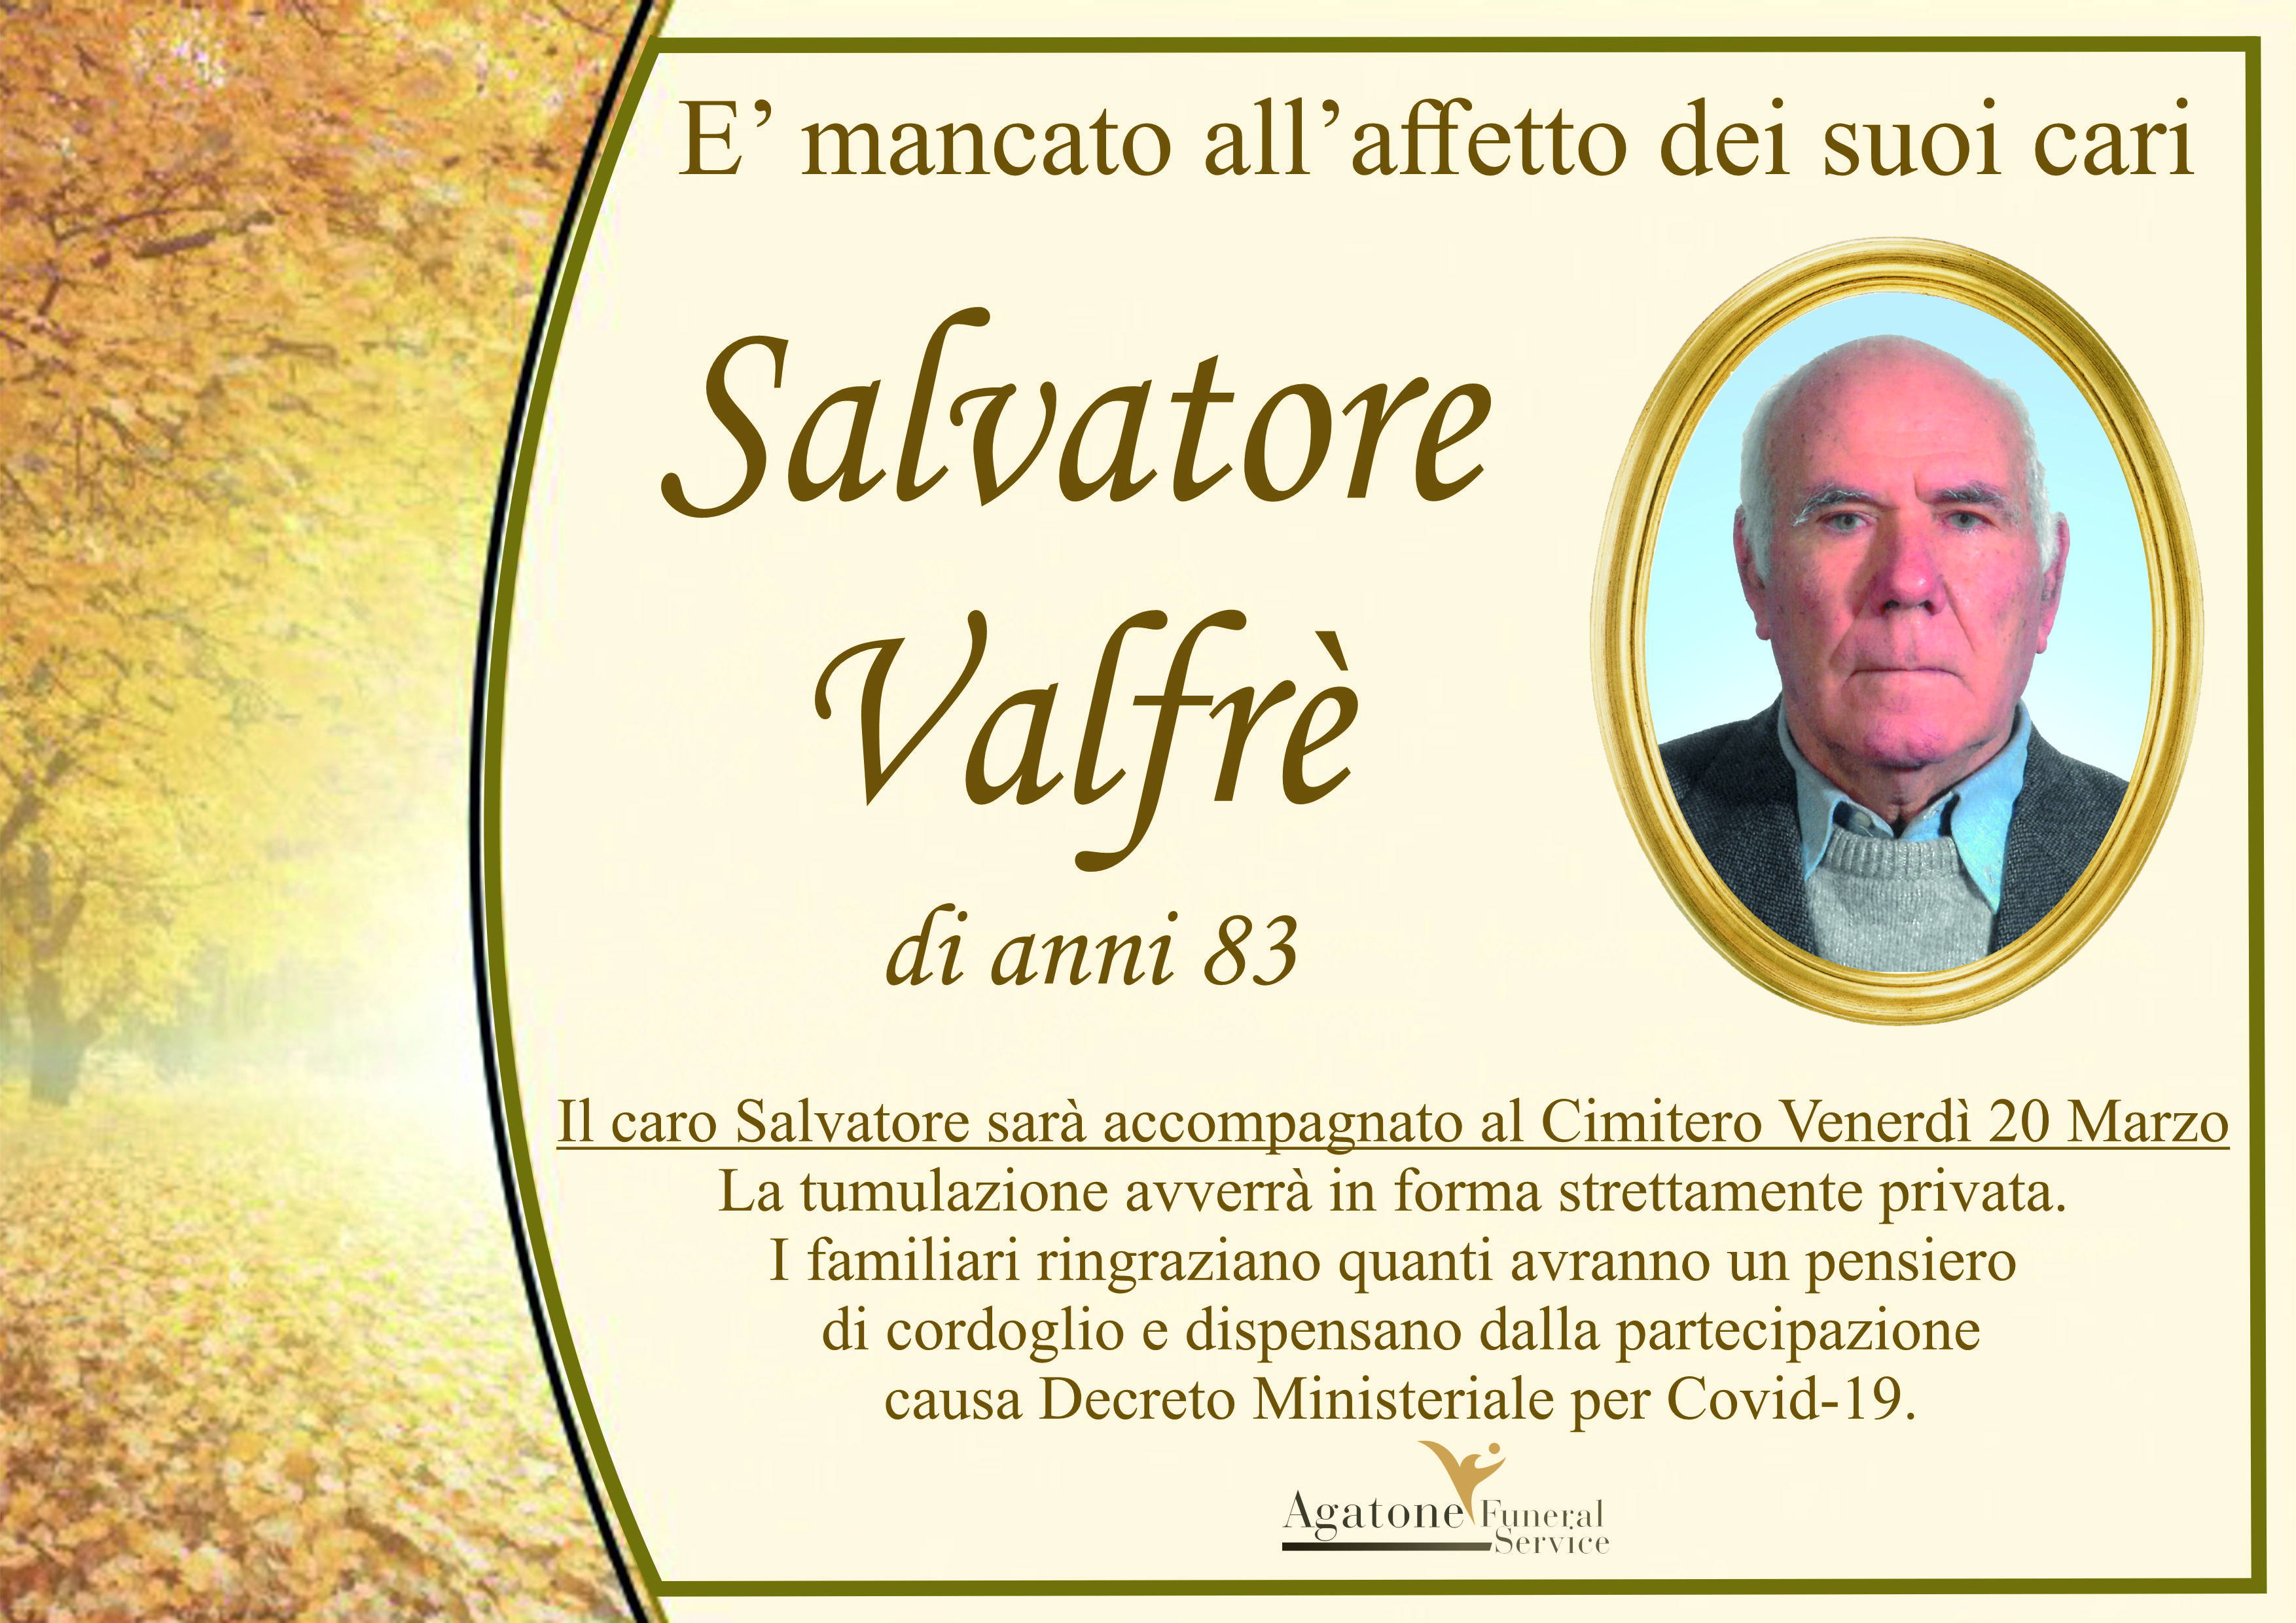 Salvatore Valfrè